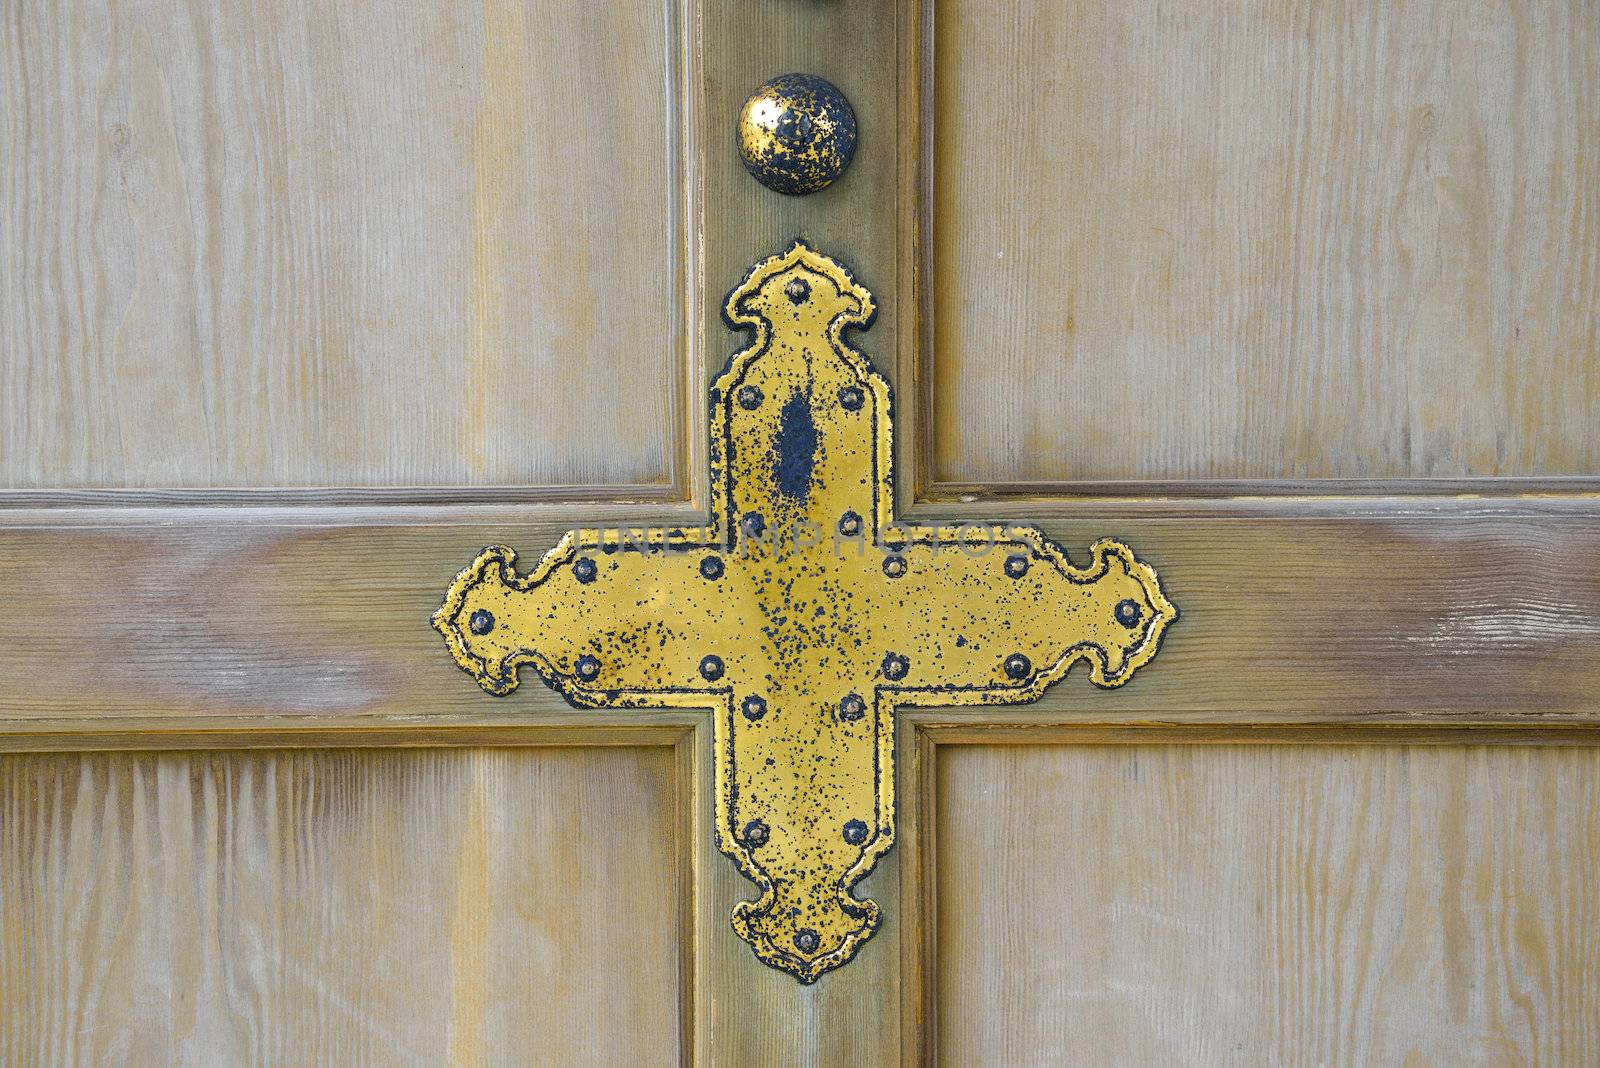 Golden cross on wooden wall